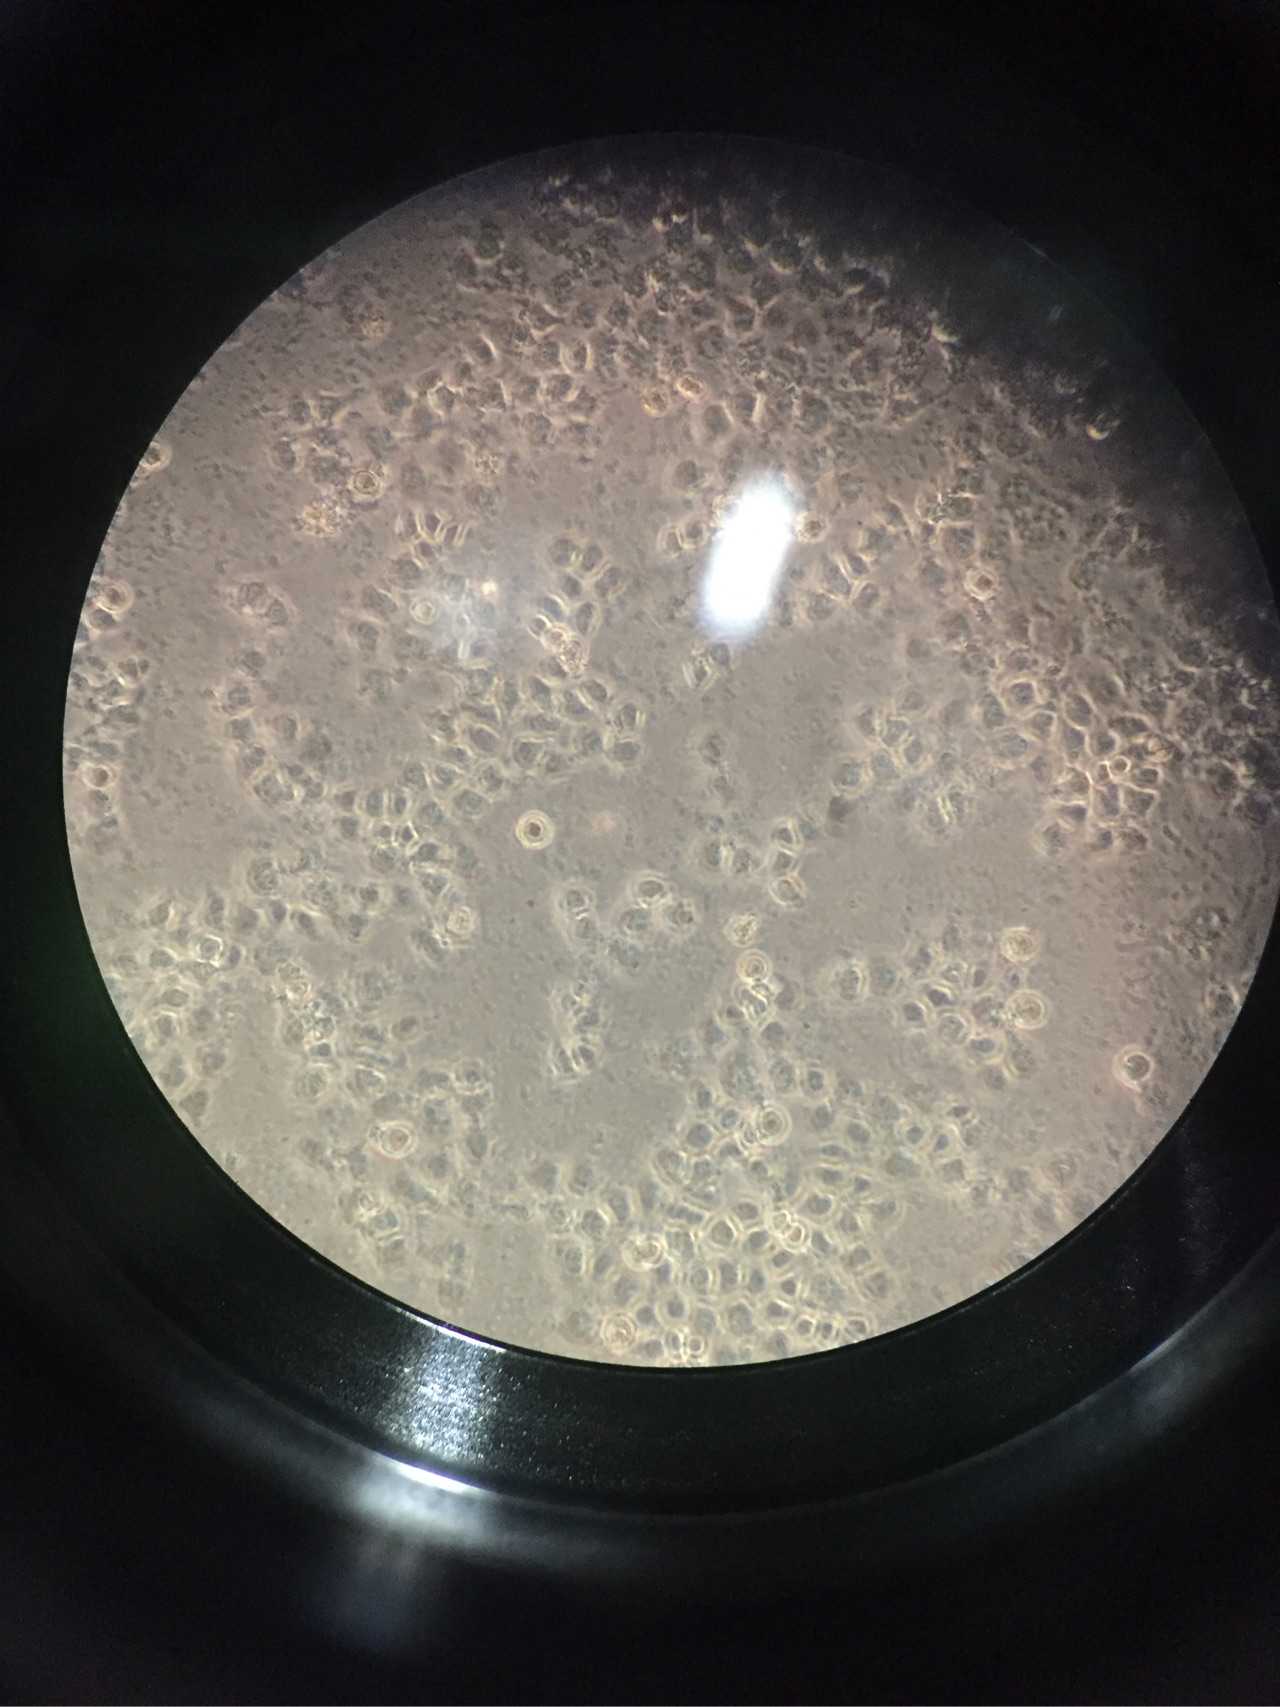 细胞的黑胶虫,在dxy上查了很多,最后猜测可能为细菌污染外加黑胶虫